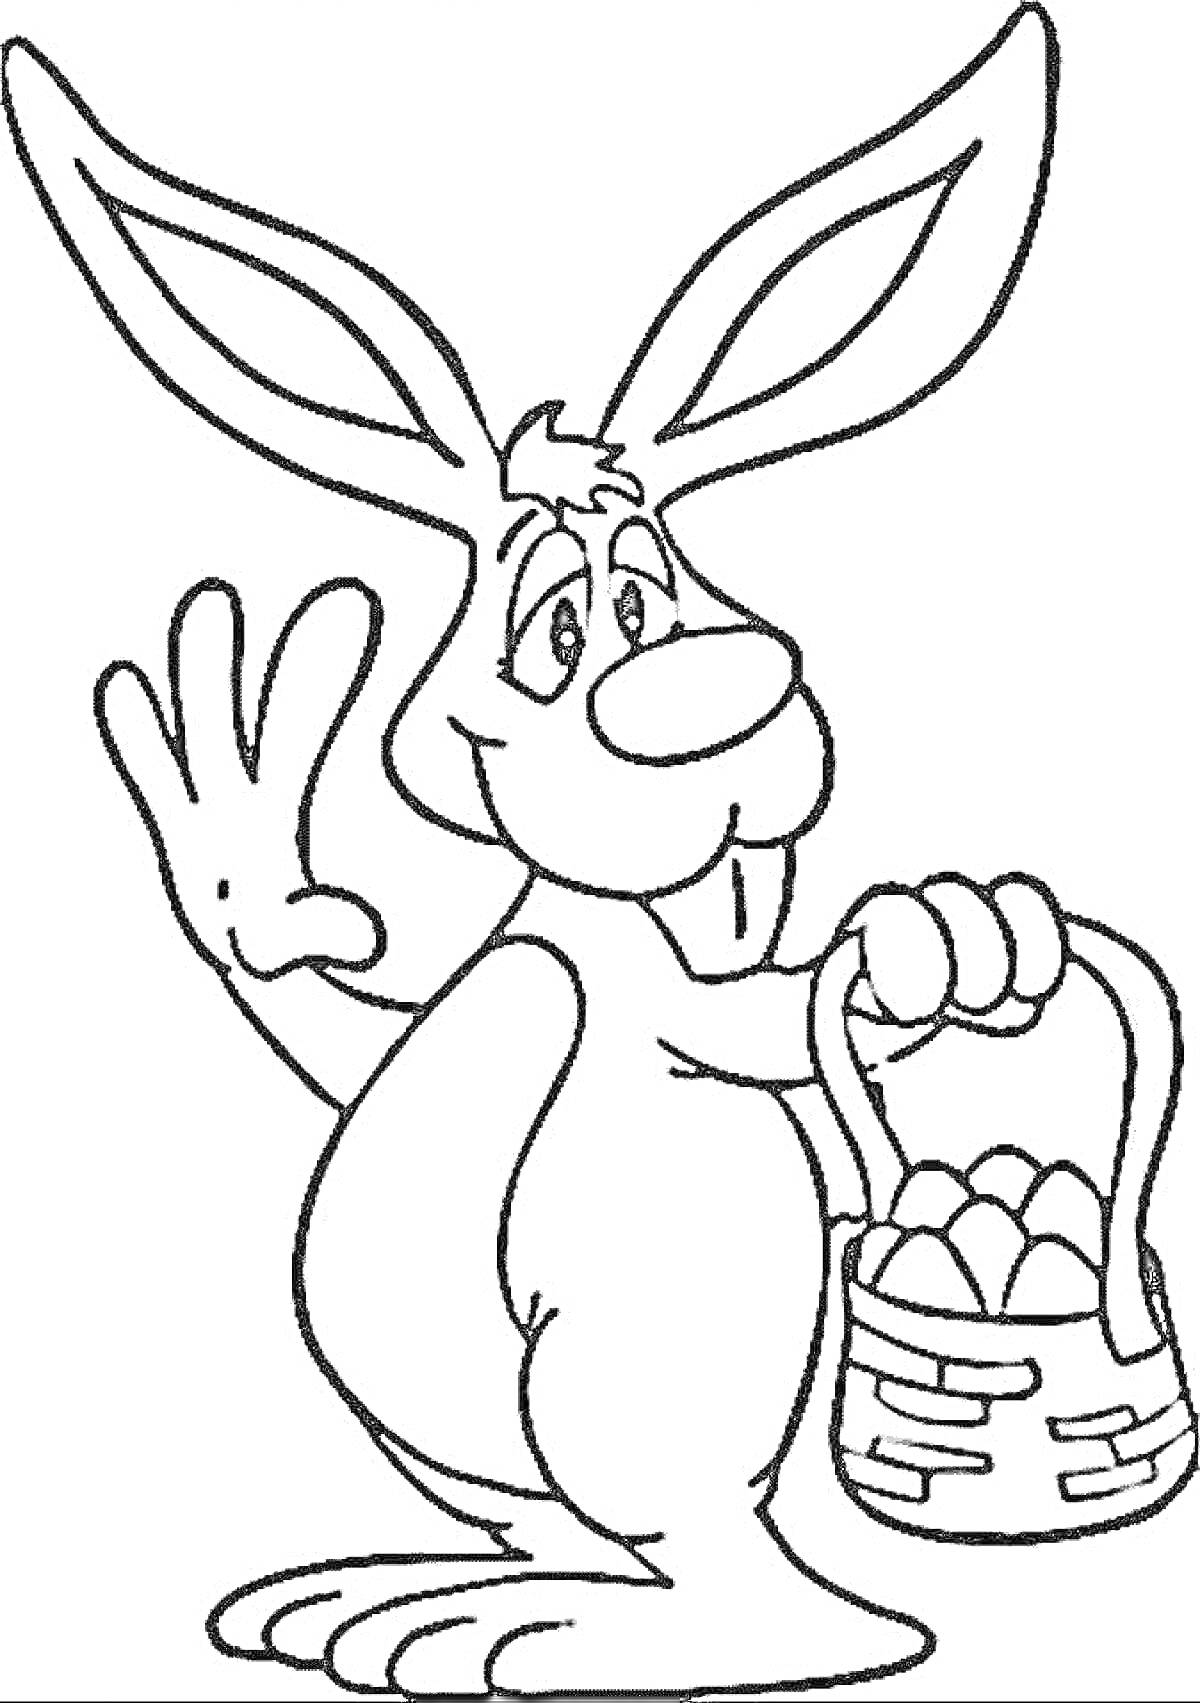 Раскраска Кролик с корзиной яиц и приветственным жестом